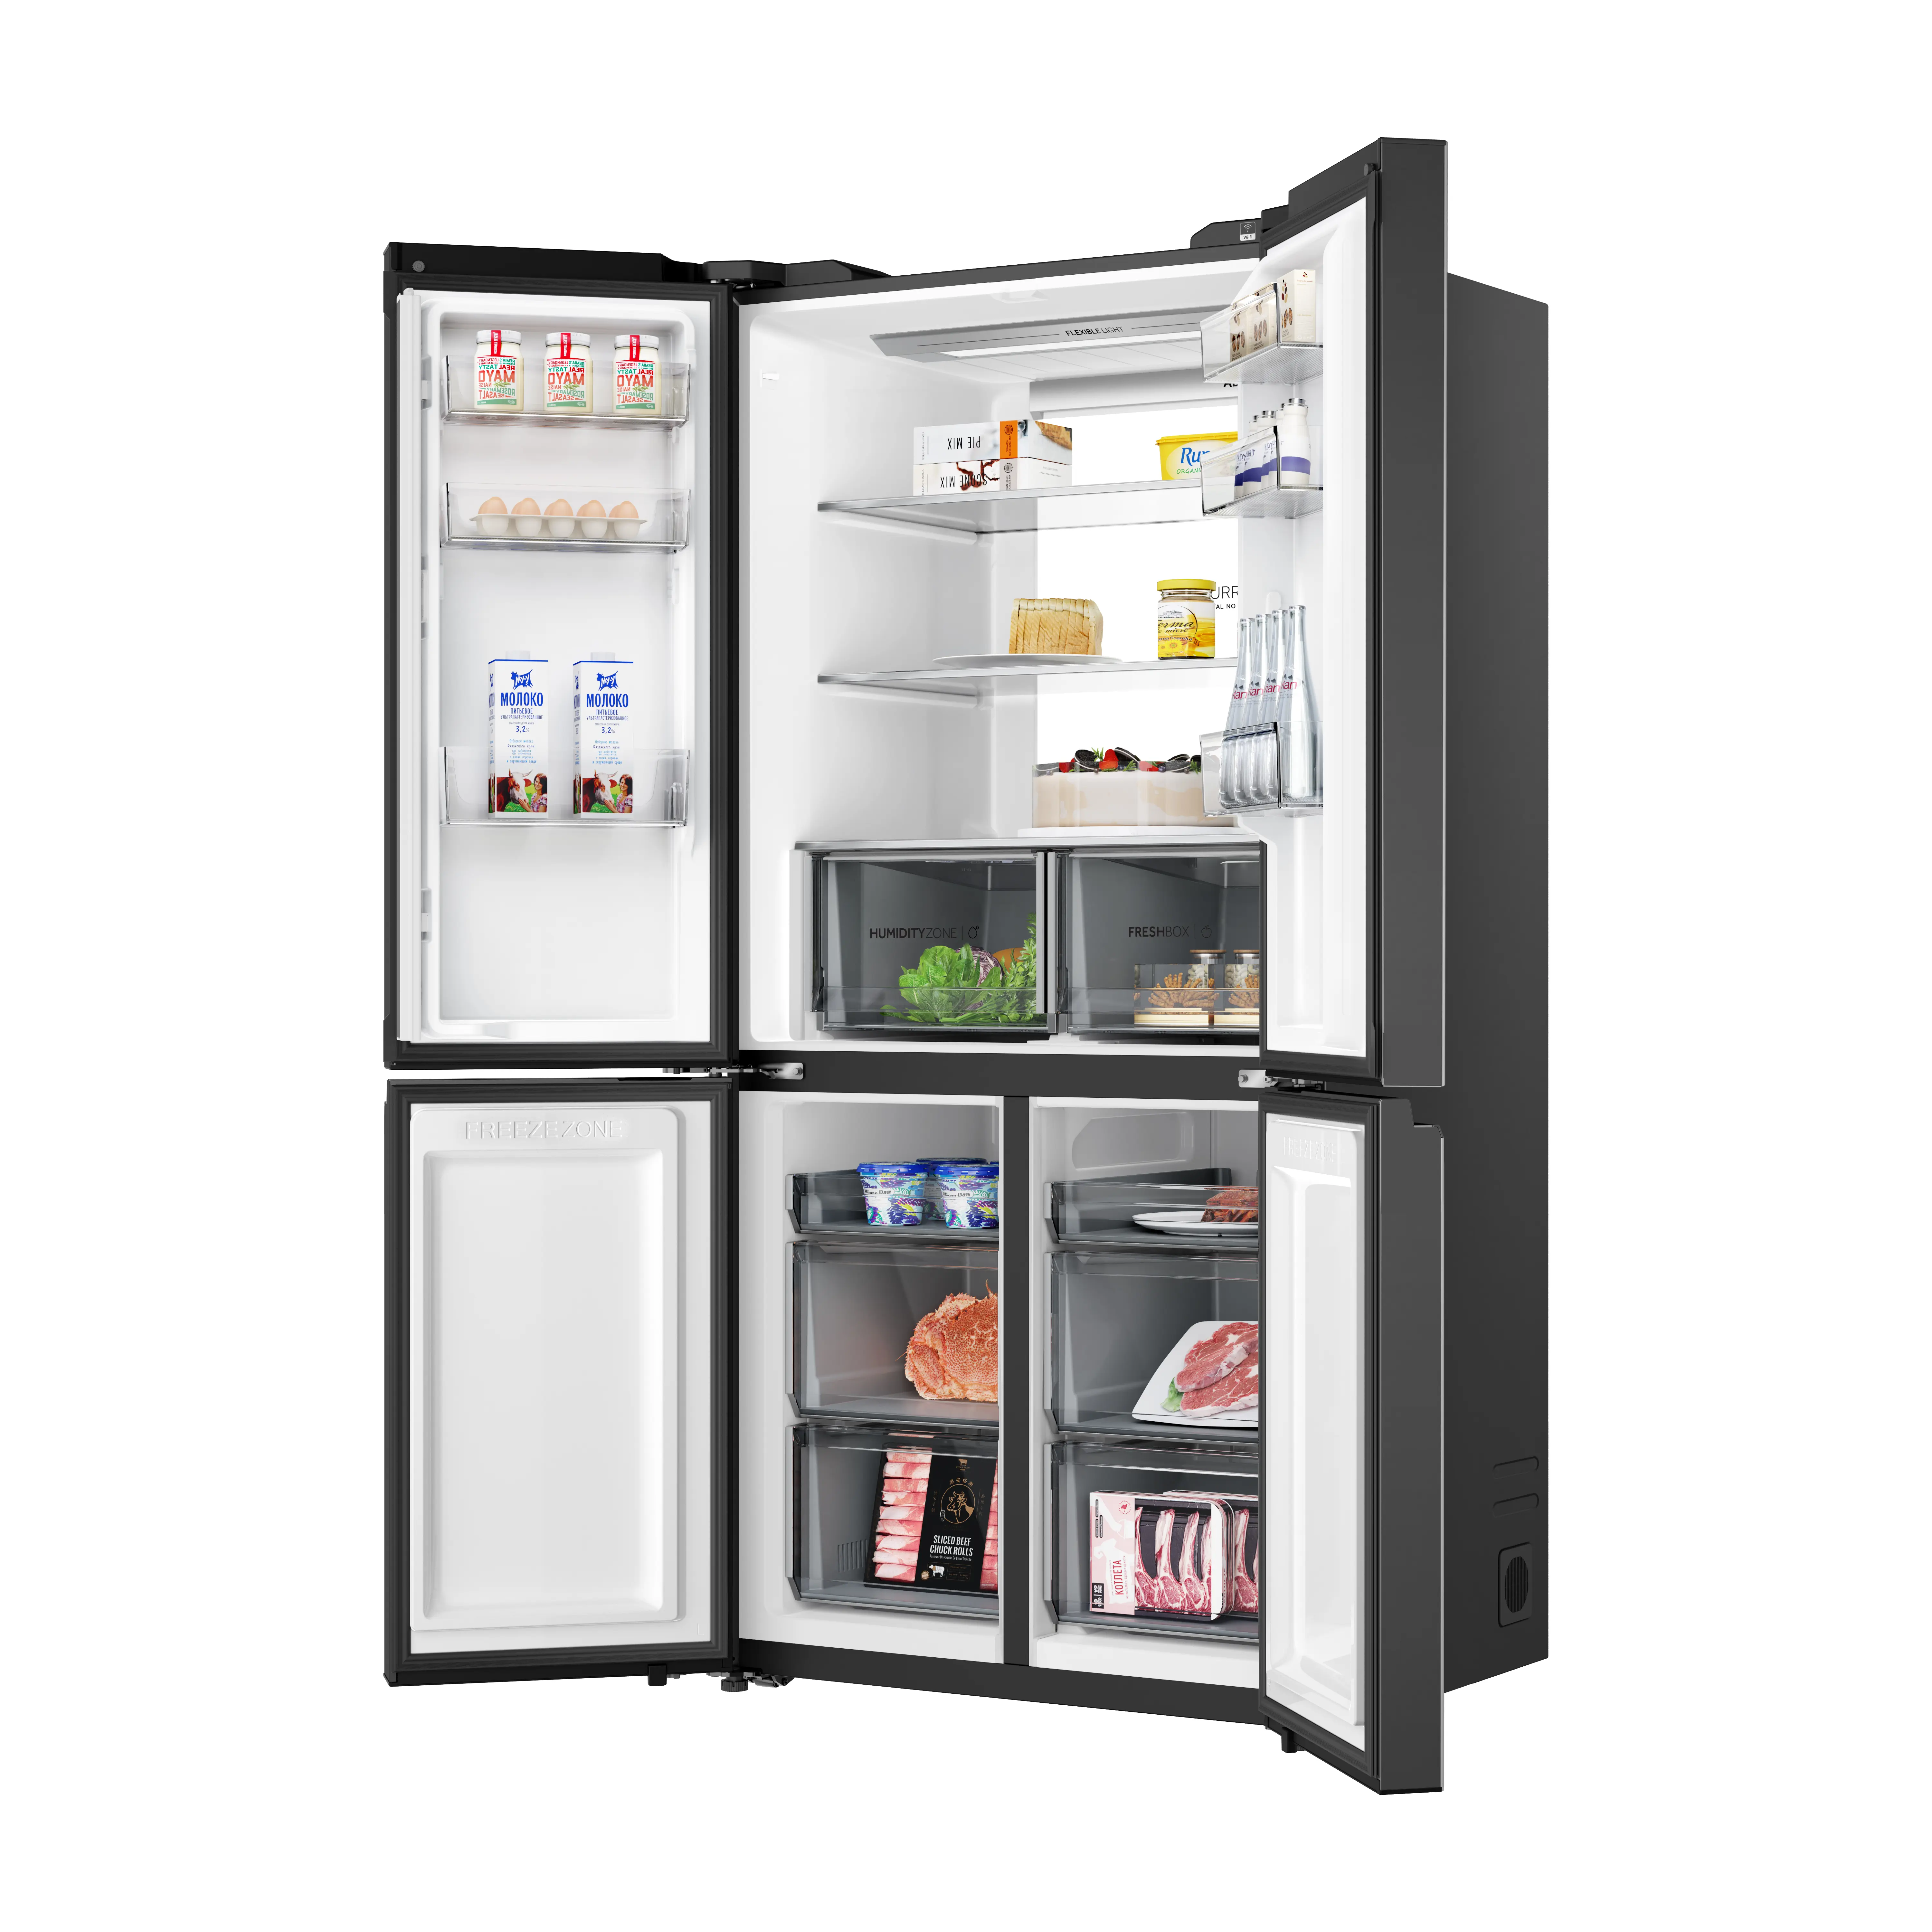 Tủ Lạnh Aqua AQR-M727XA(GS)U1 660L Inverter - Hàng Chính Hãng (Chỉ giao HCM)